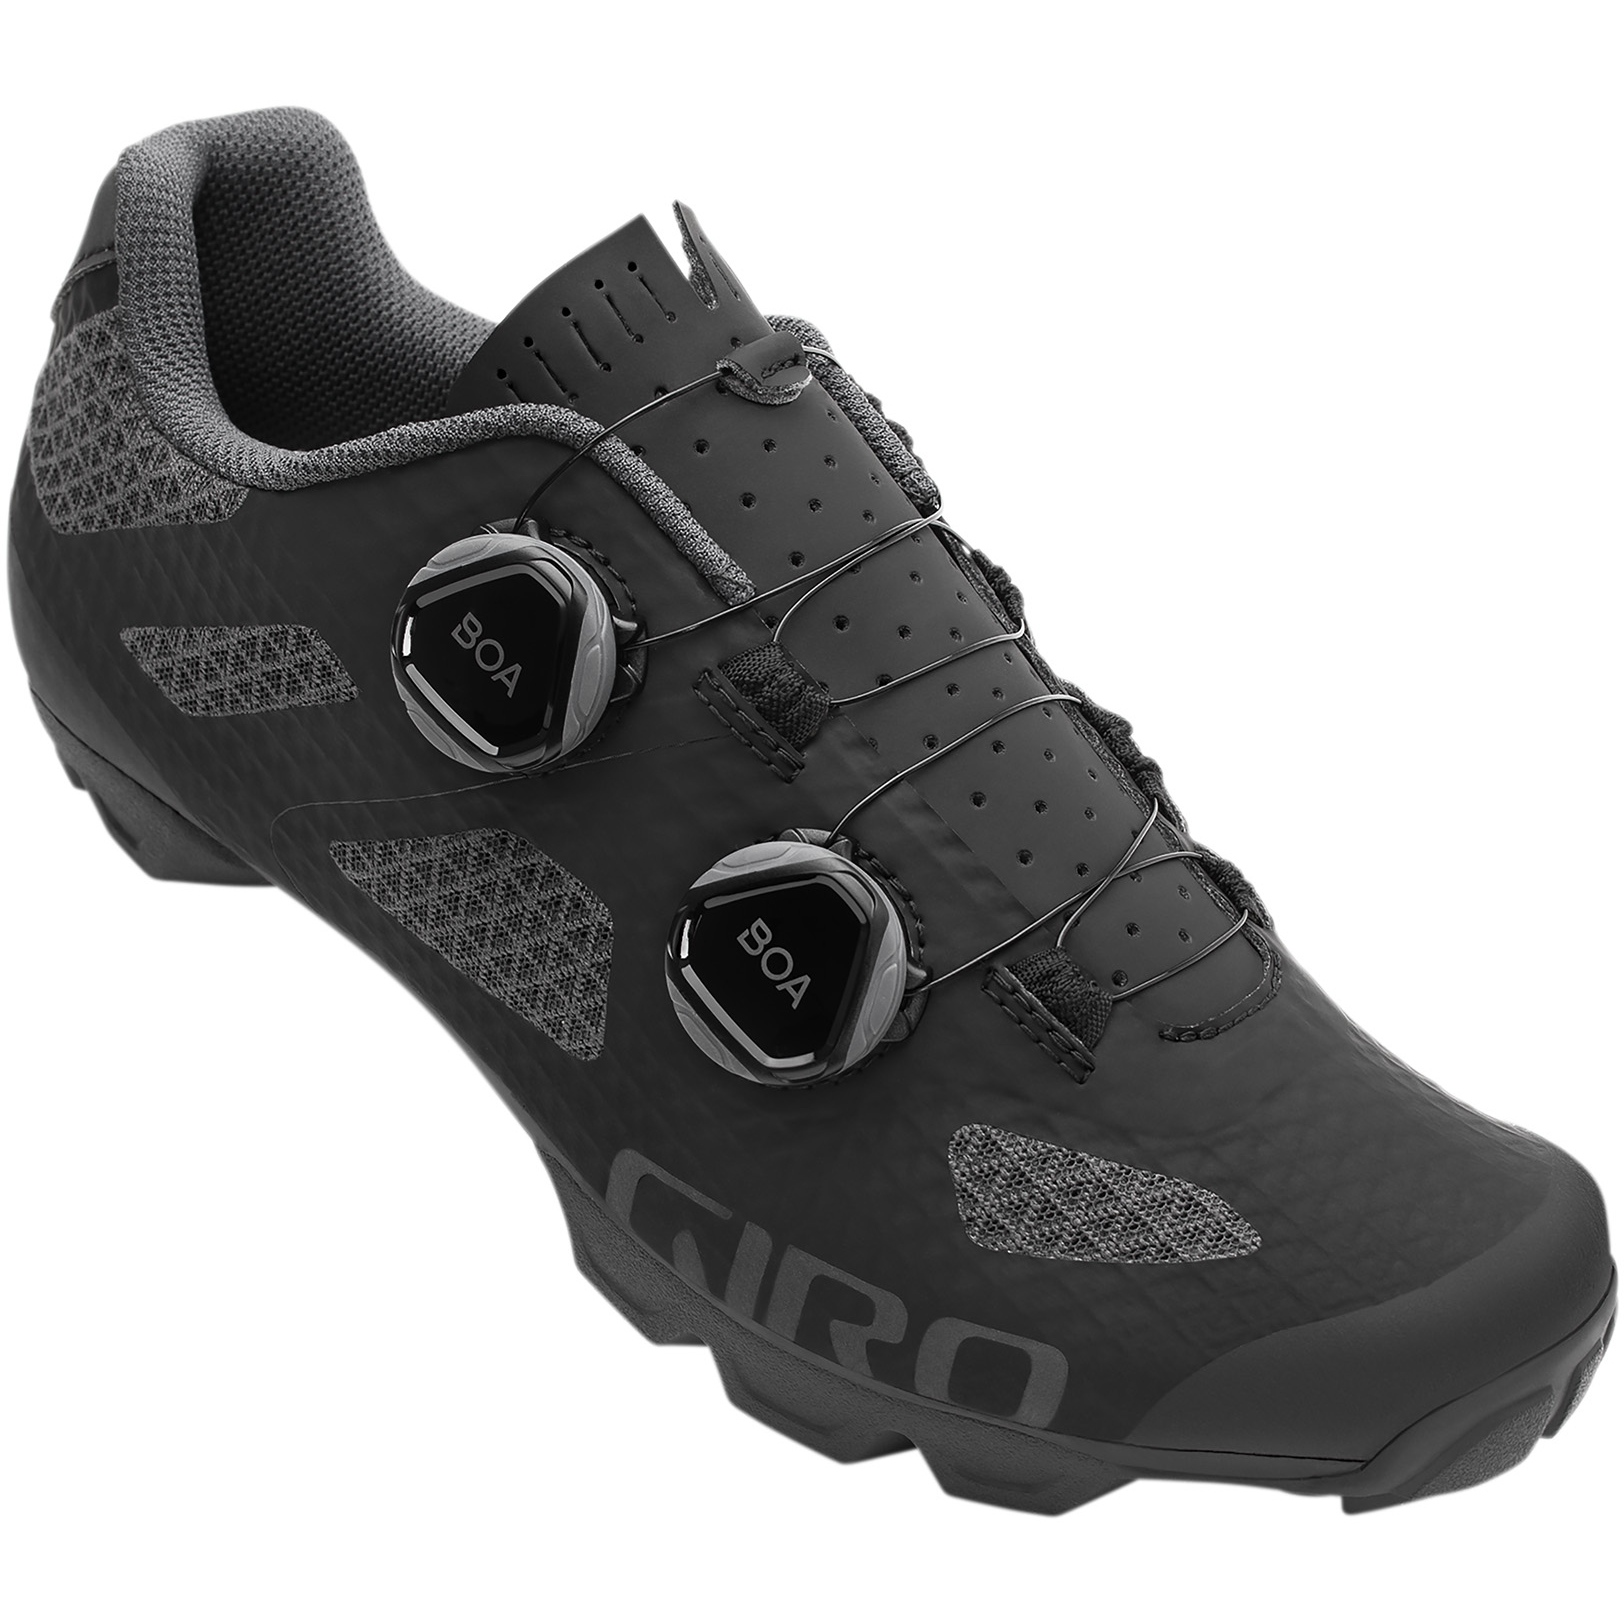 Produktbild von Giro Sector MTB Schuhe Damen - black/dark shadow